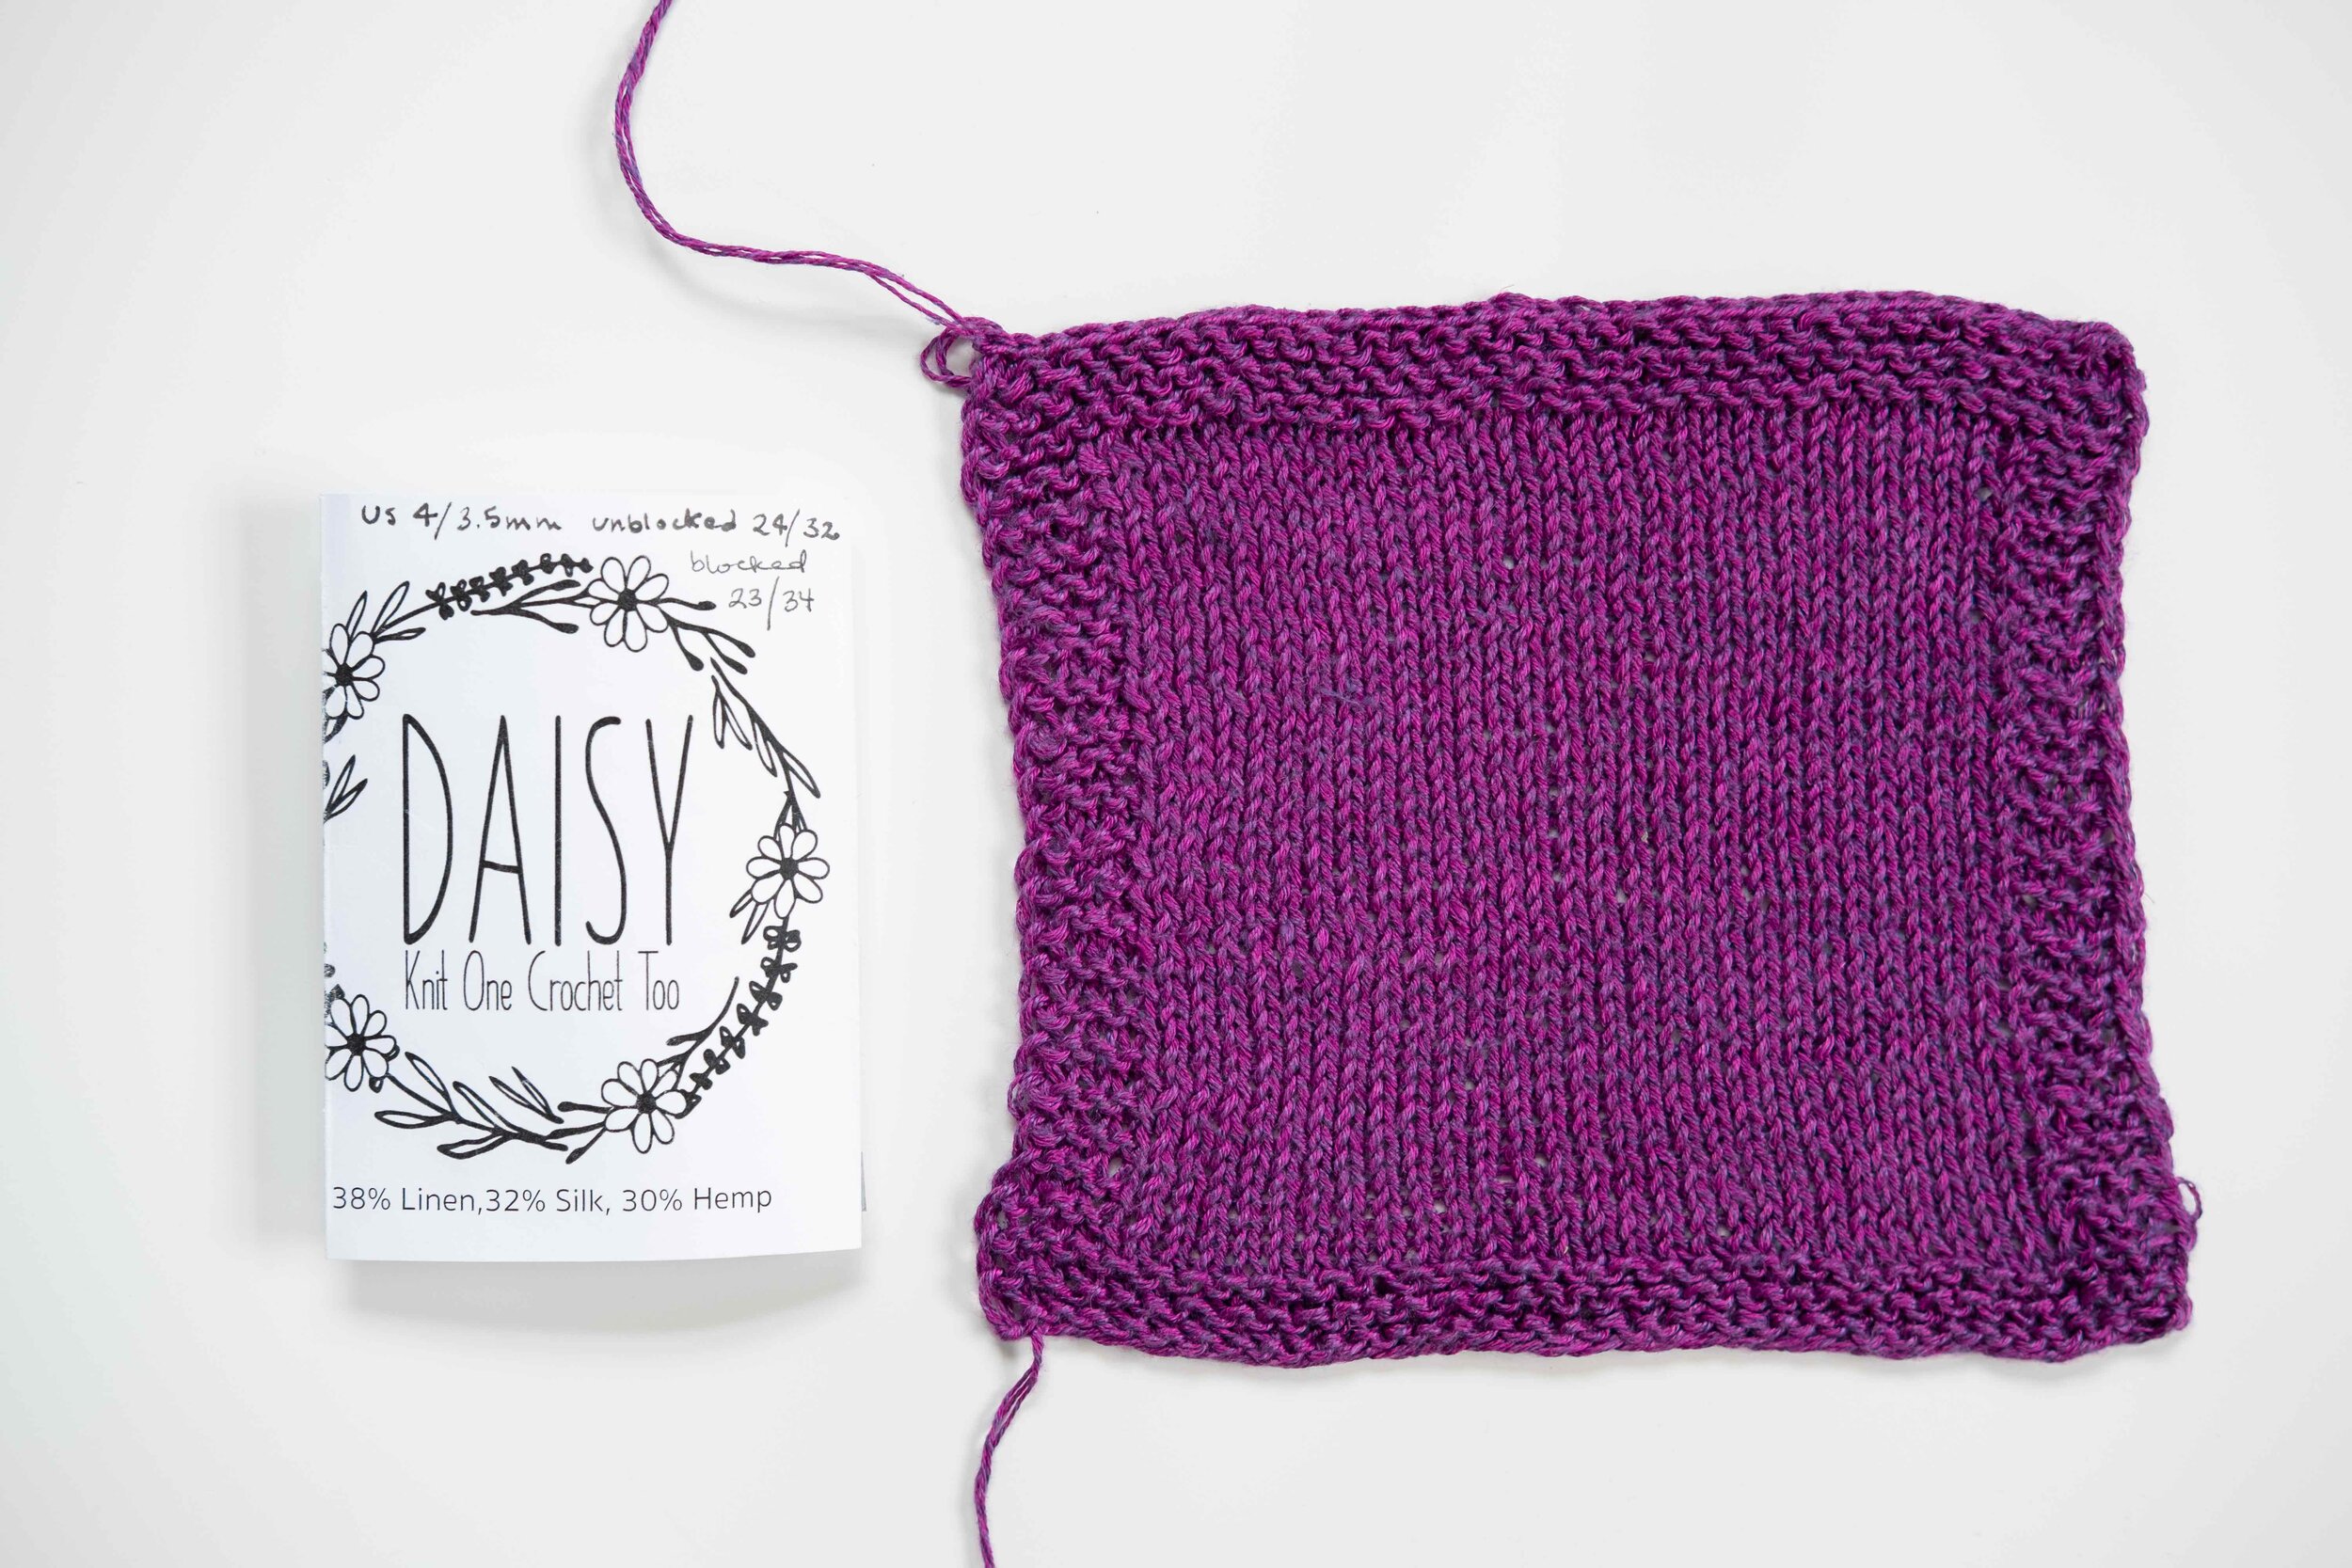 knit1crochet2_daisy_small.jpg